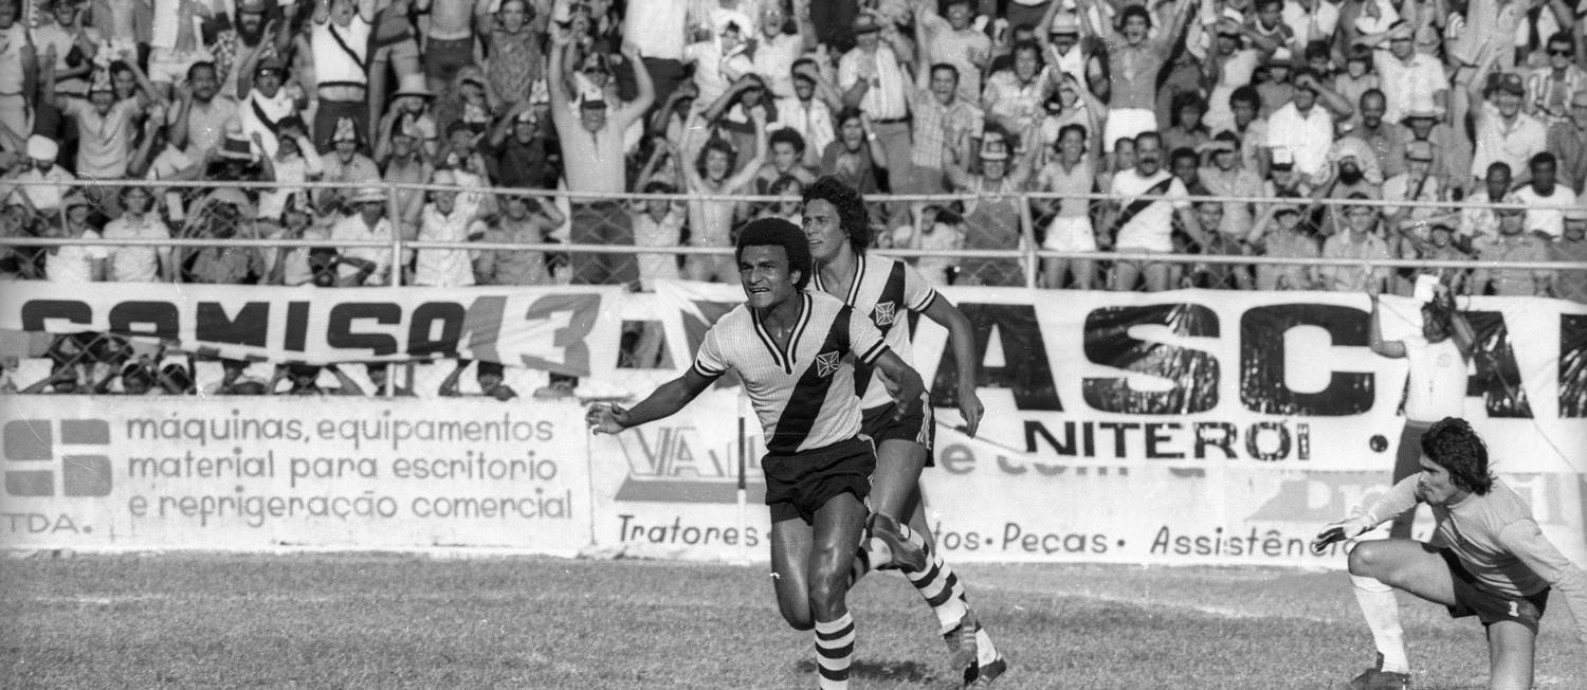 Ramon corre para comemorar o gol marcado, seguido por Roberto Dinamite, na vitória sobre o Americano pelo Campeonato Carioca de 1977 Foto: Eurico Dantas/Agência O Globo